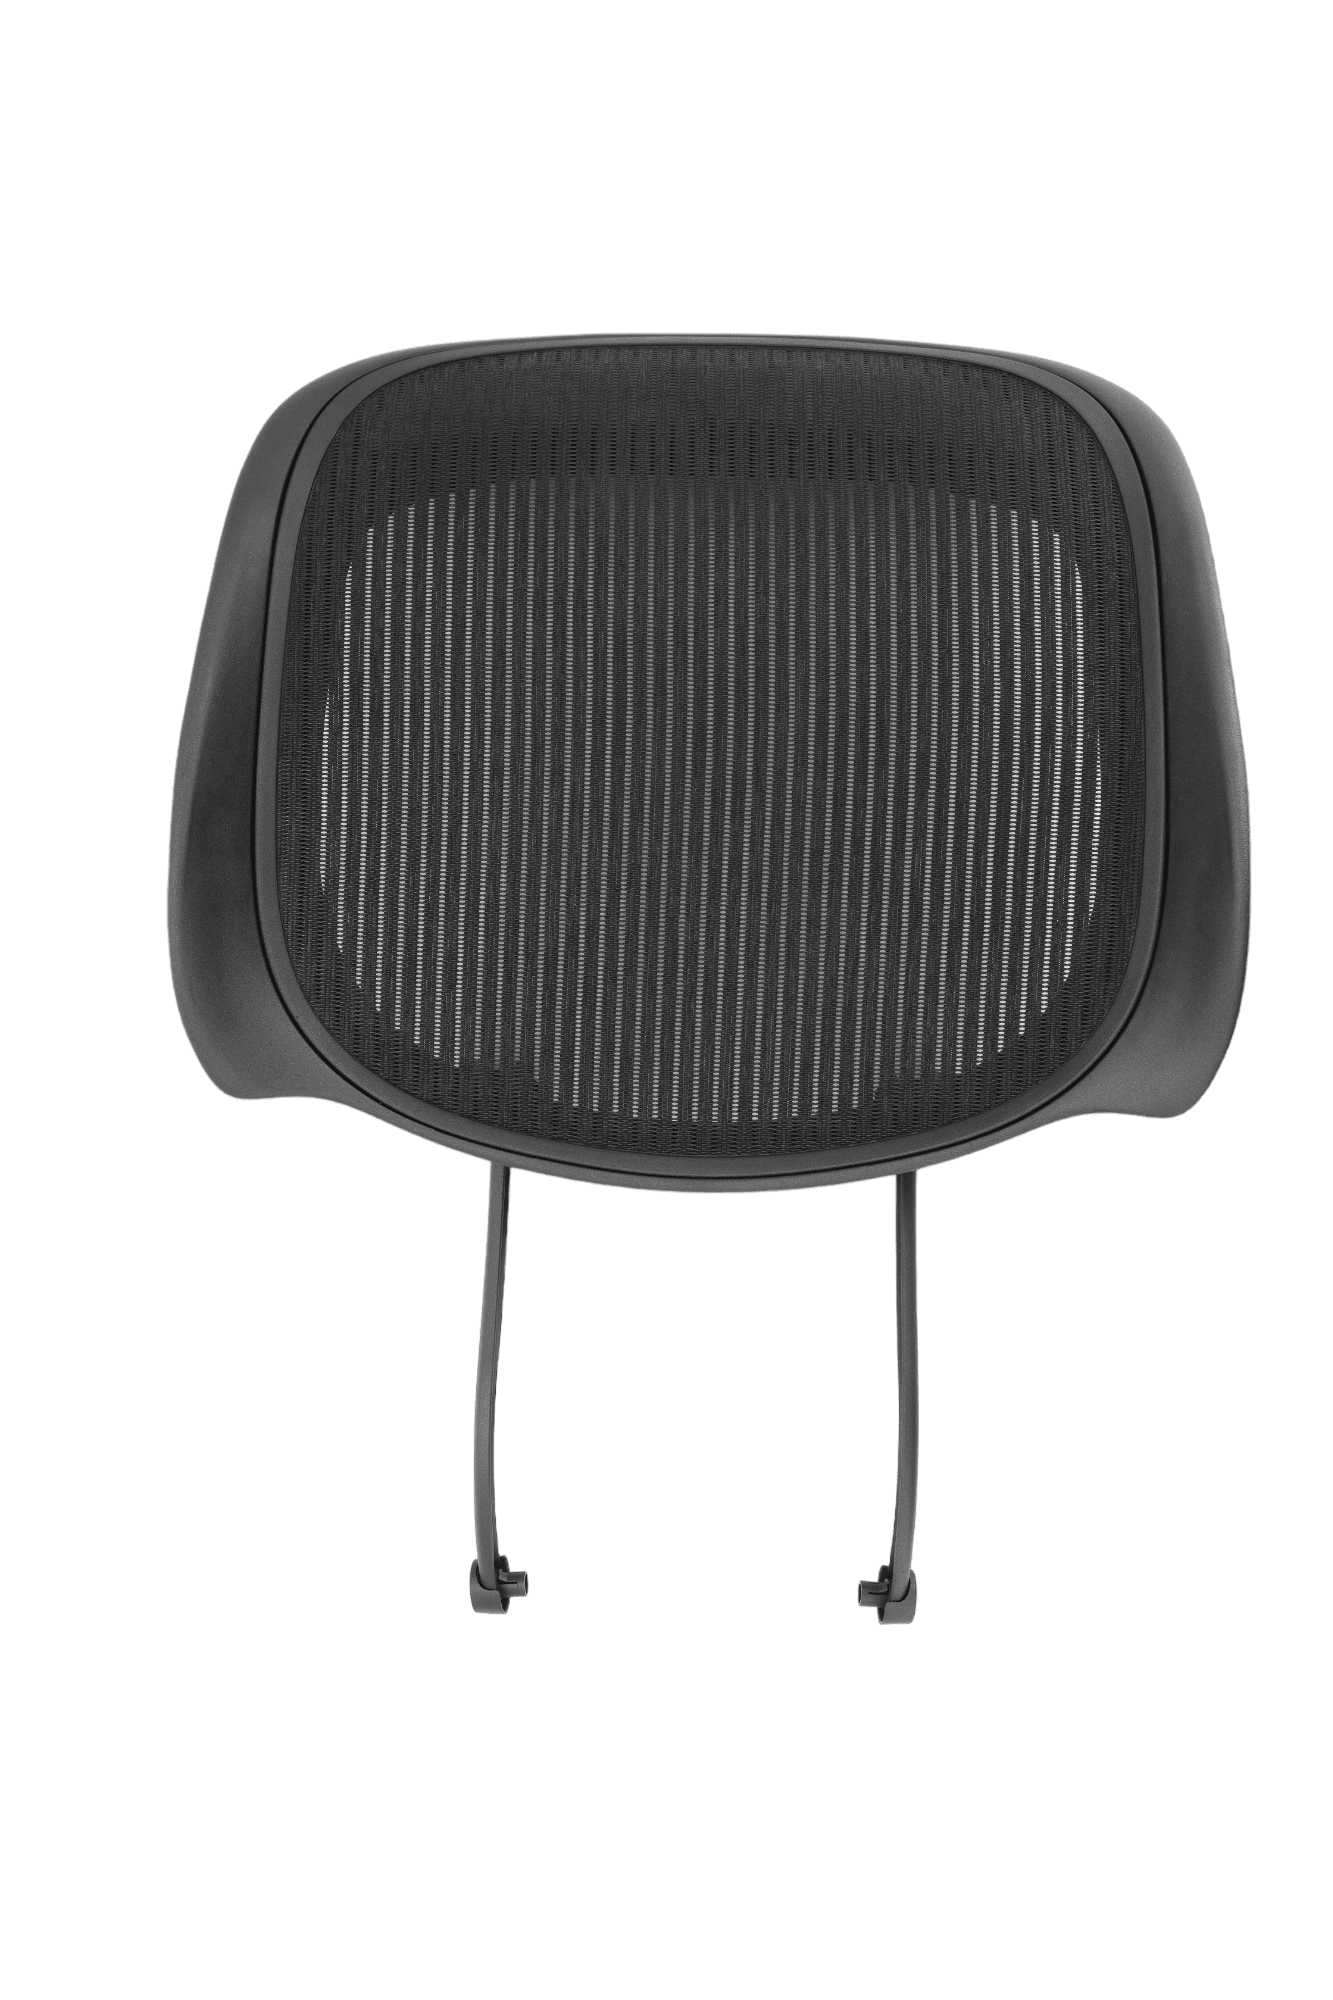 Replacement Seat Herman Miller Aeron Chair Size B